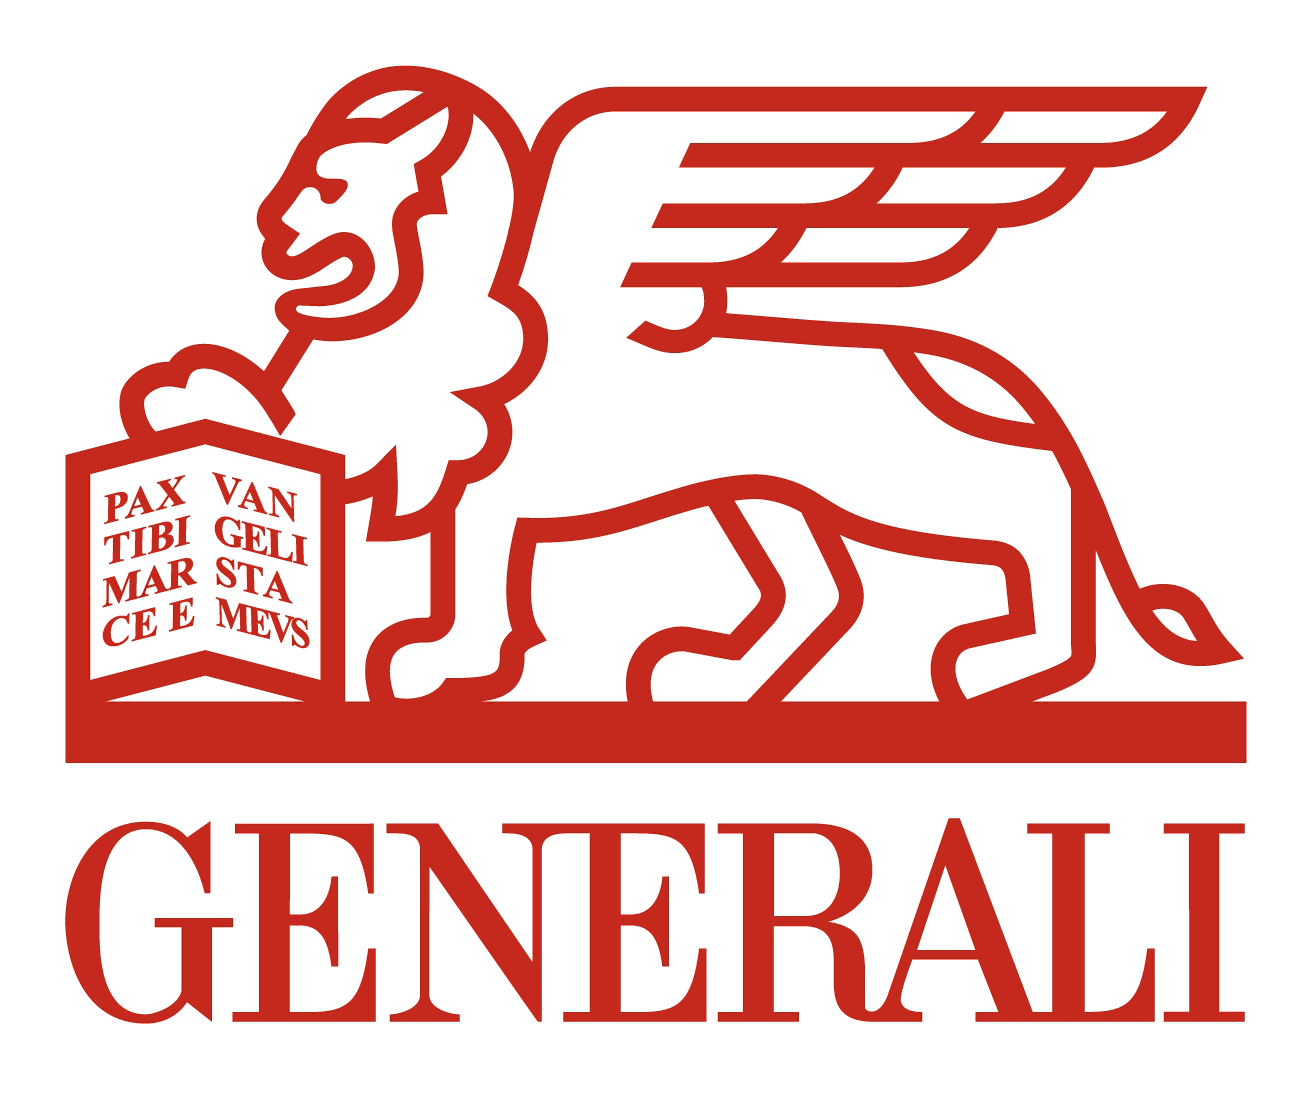 Generali_logo_logotype_emblem